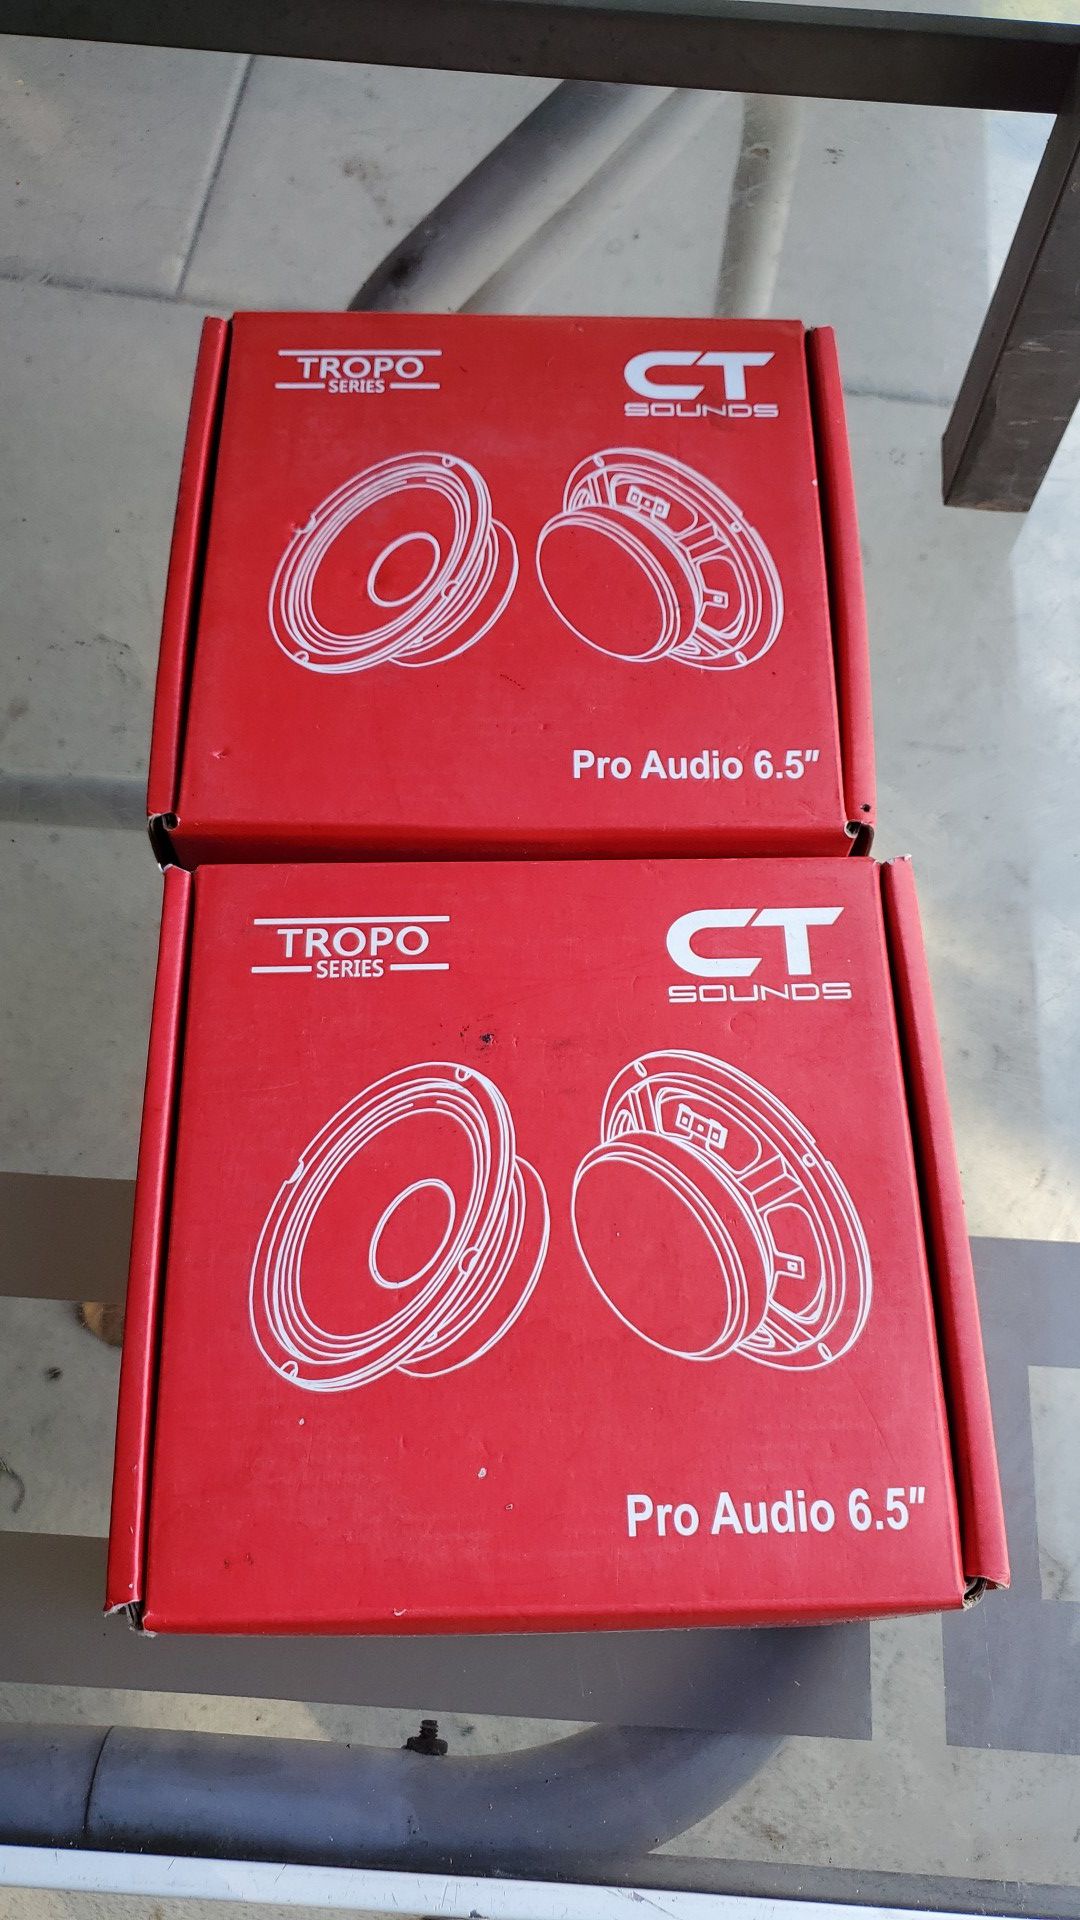 Ct sound pro audio 6.5"